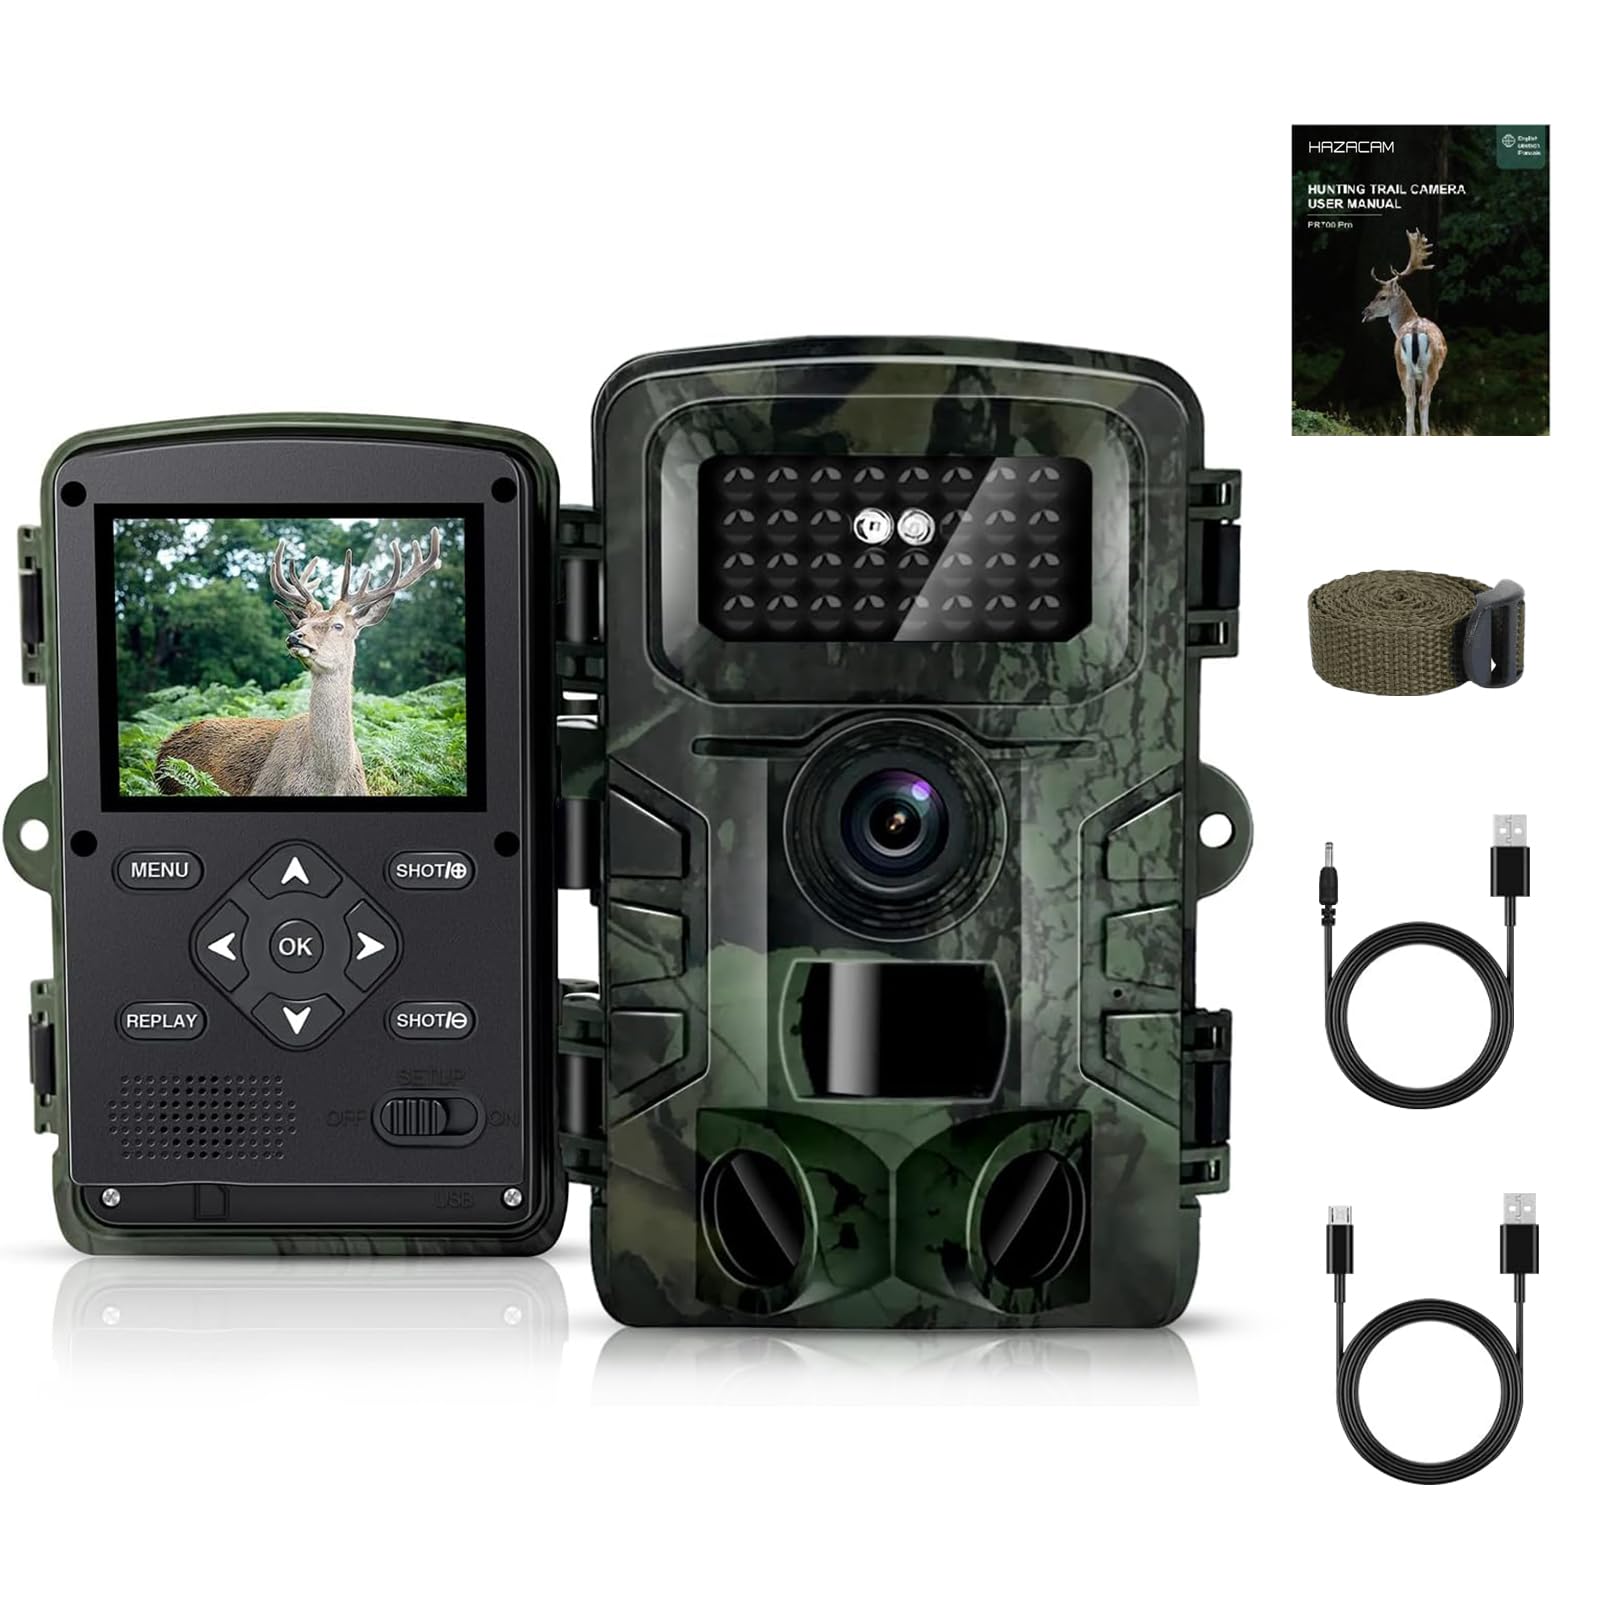 HAZACAM Wildkamera, 48MP Wildkameras LCD-Bildschirm mit Video Wildtierkamera mit Bewegungsmelder Nachtsicht Draussen Nachtsichtkamera aufzeichnung Tiere tierbeobachtungskamera Nachtsichtgeräte